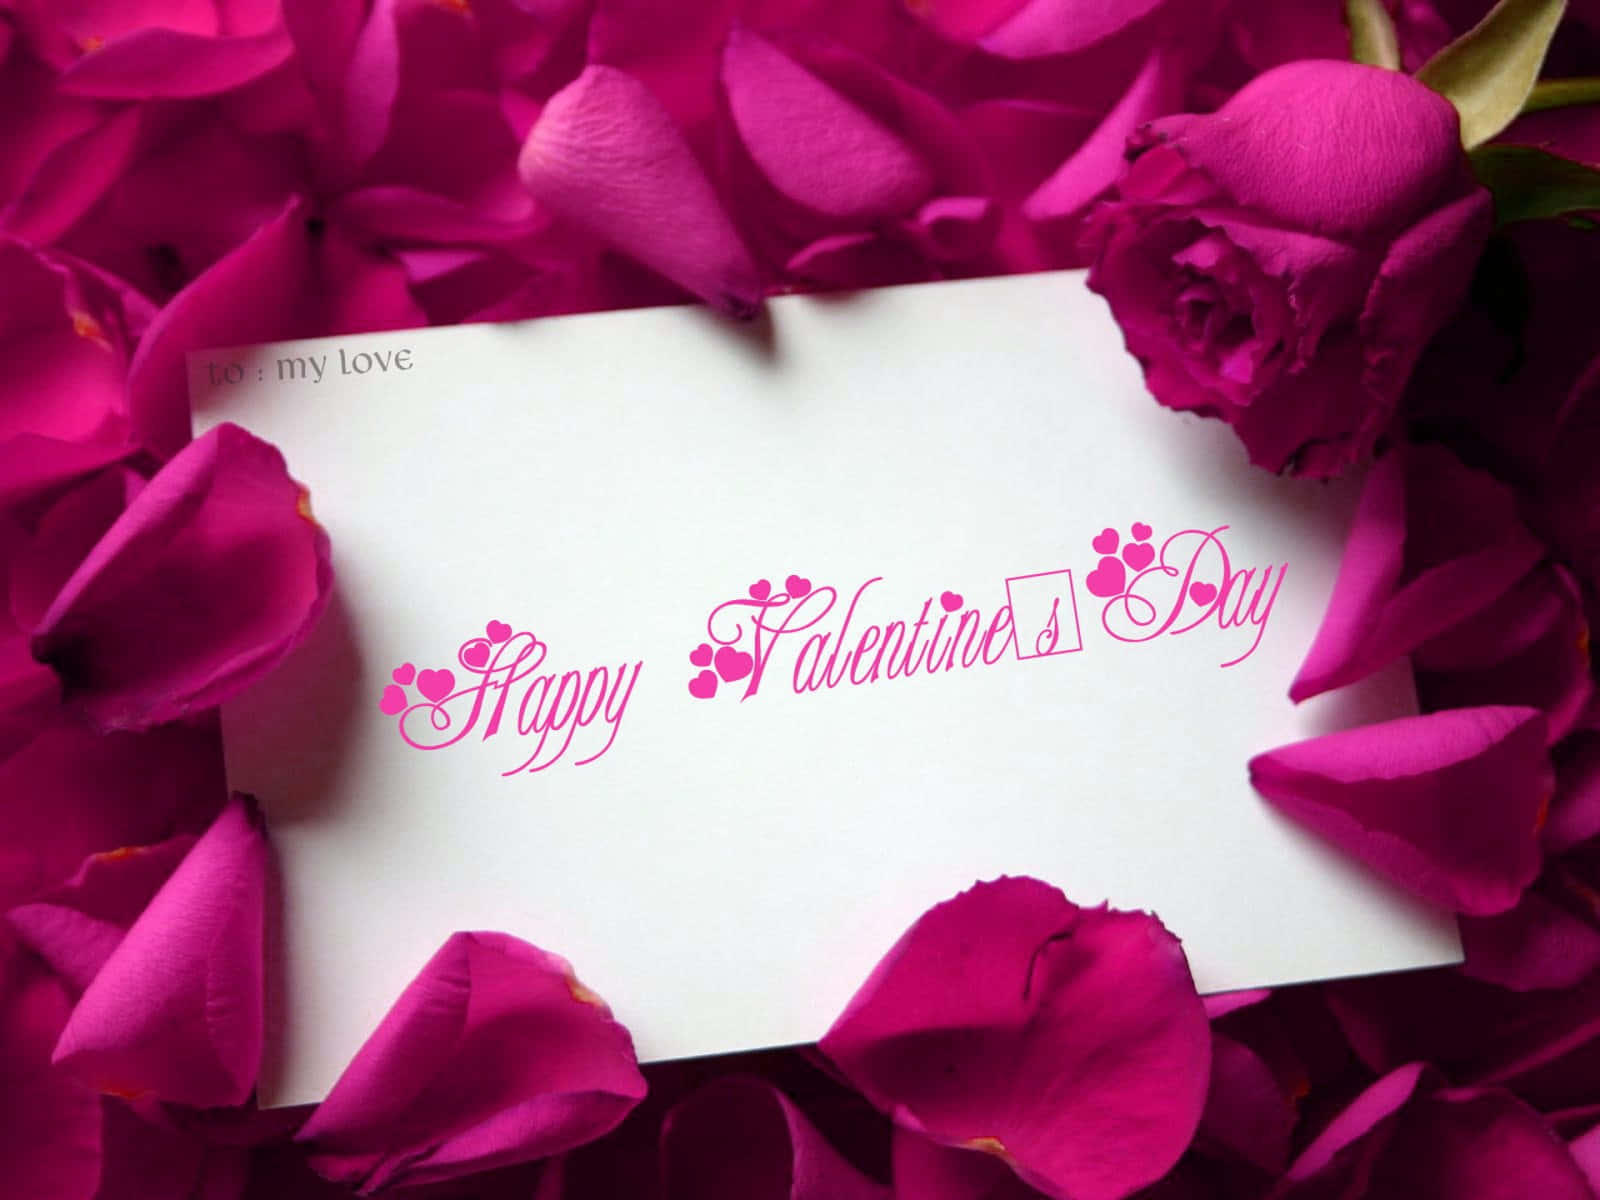 Vis din elskede noget kærlighed til Valentinsdag med en sød og speciel gave! Wallpaper